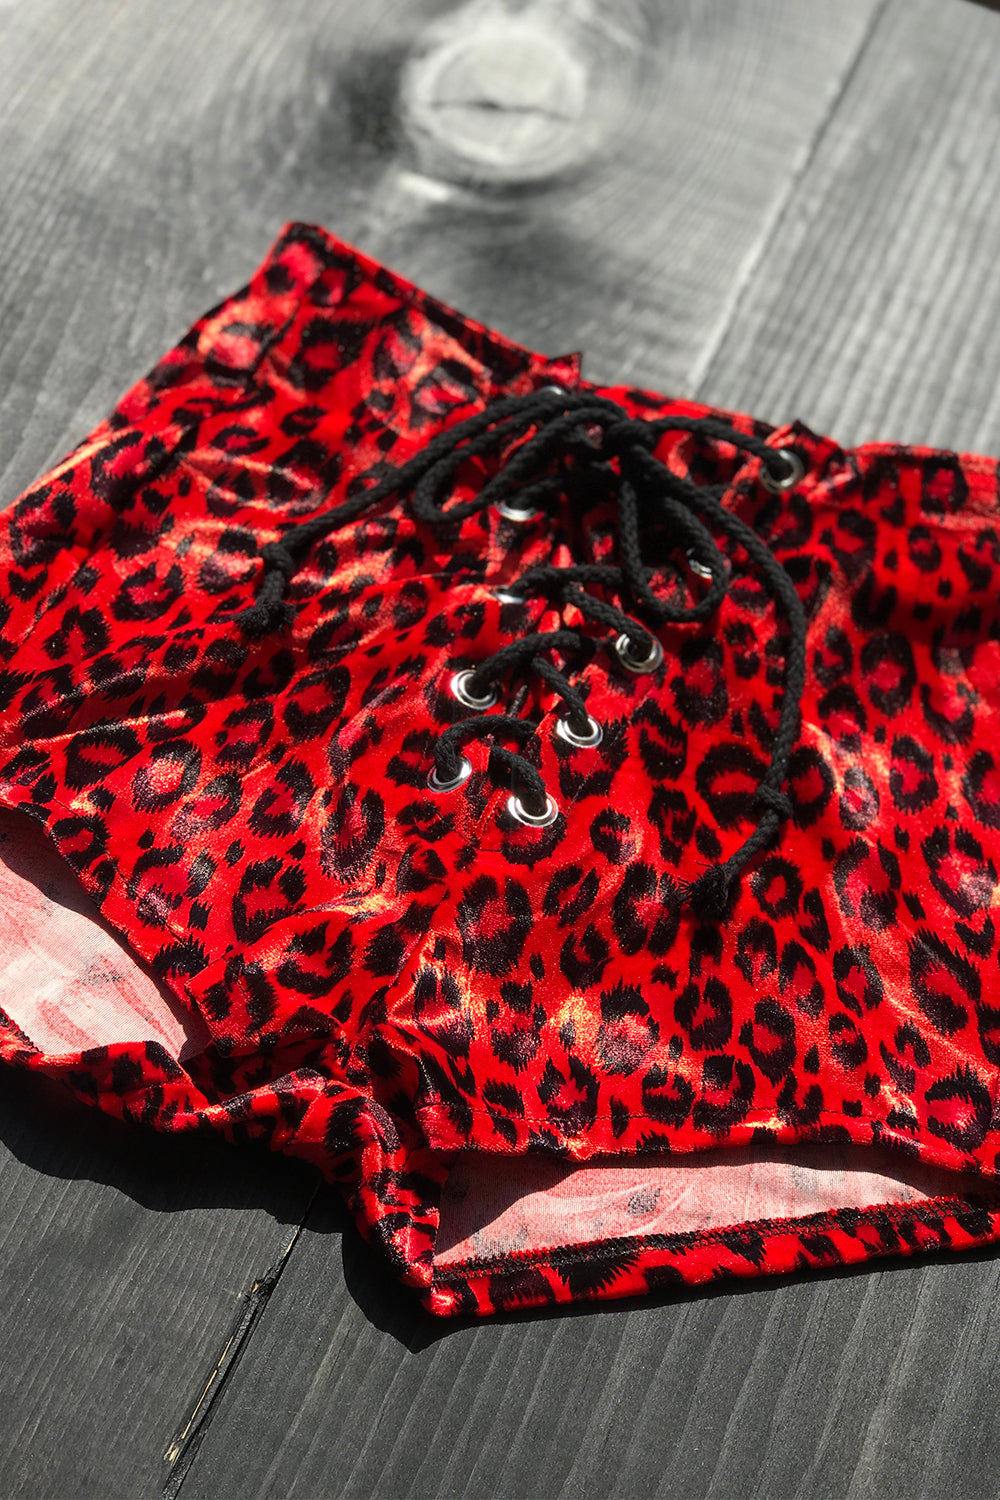 Z Velvet Grommet Shorts Size S・Red Cheetah, bottoms, BAD VIBES, BACKBITE